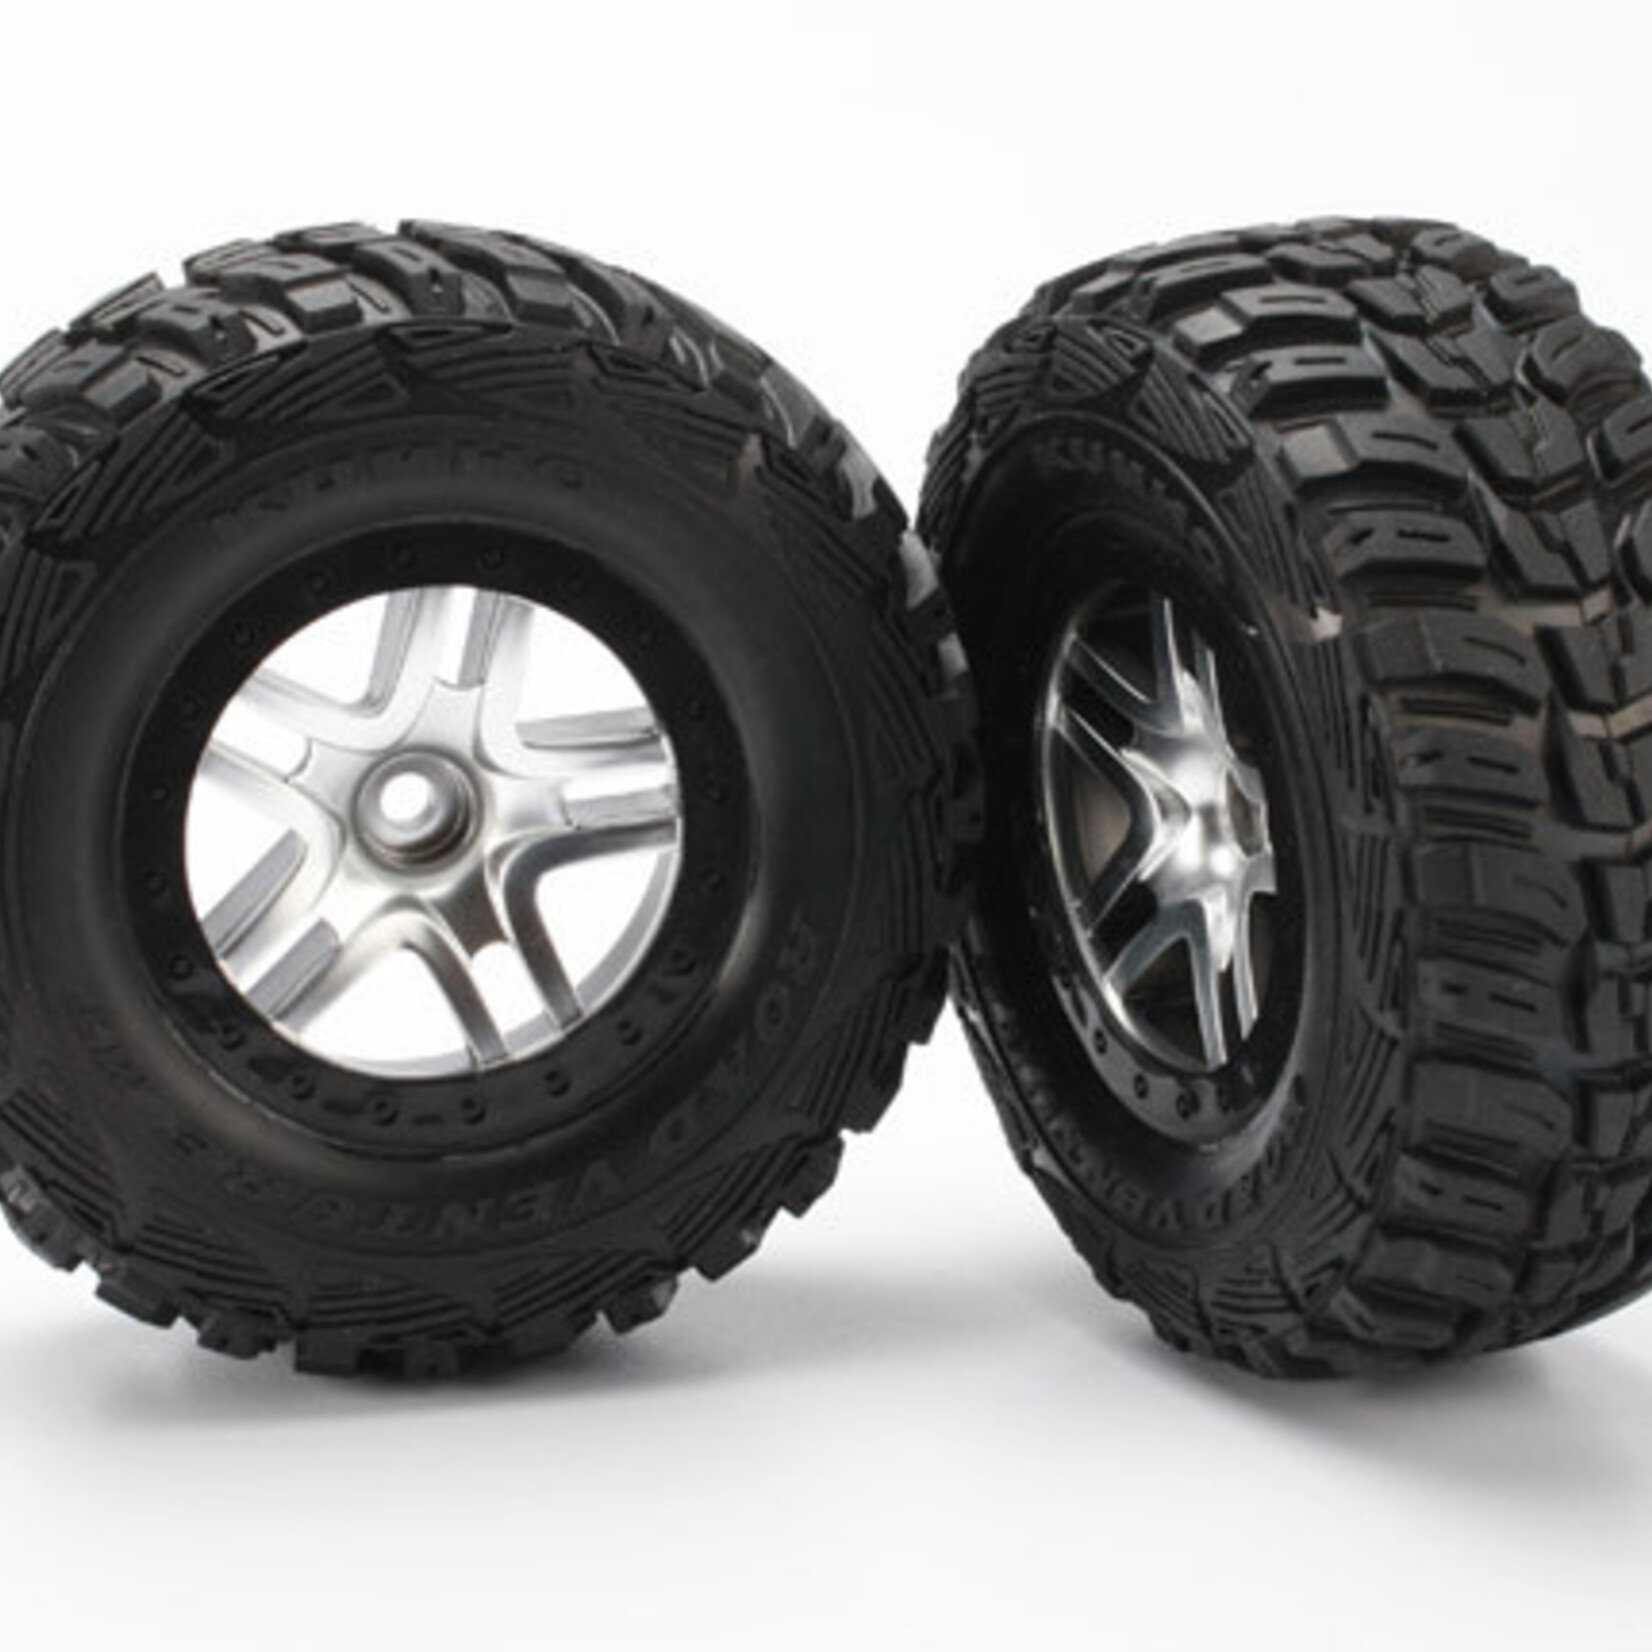 Traxxas Traxxas 5882 Tire & Wheel SCT Split-Spoke Satin Chrome Black Wheels Kumho Foam Inserts (2) (2WD front)